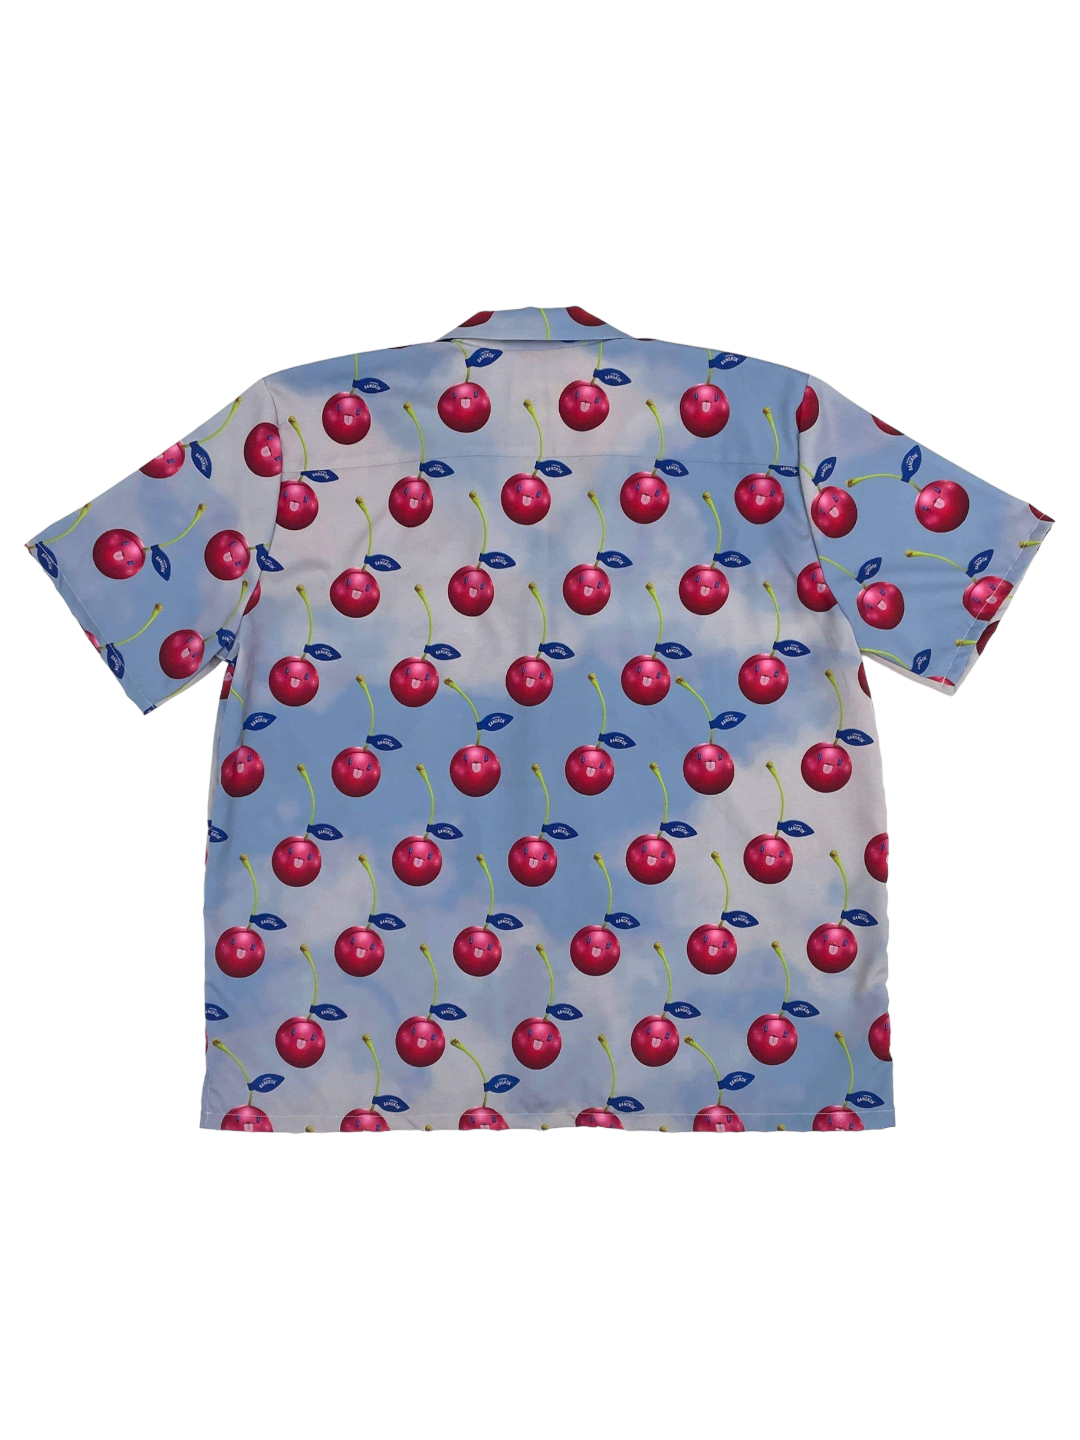 Cherry Shirt